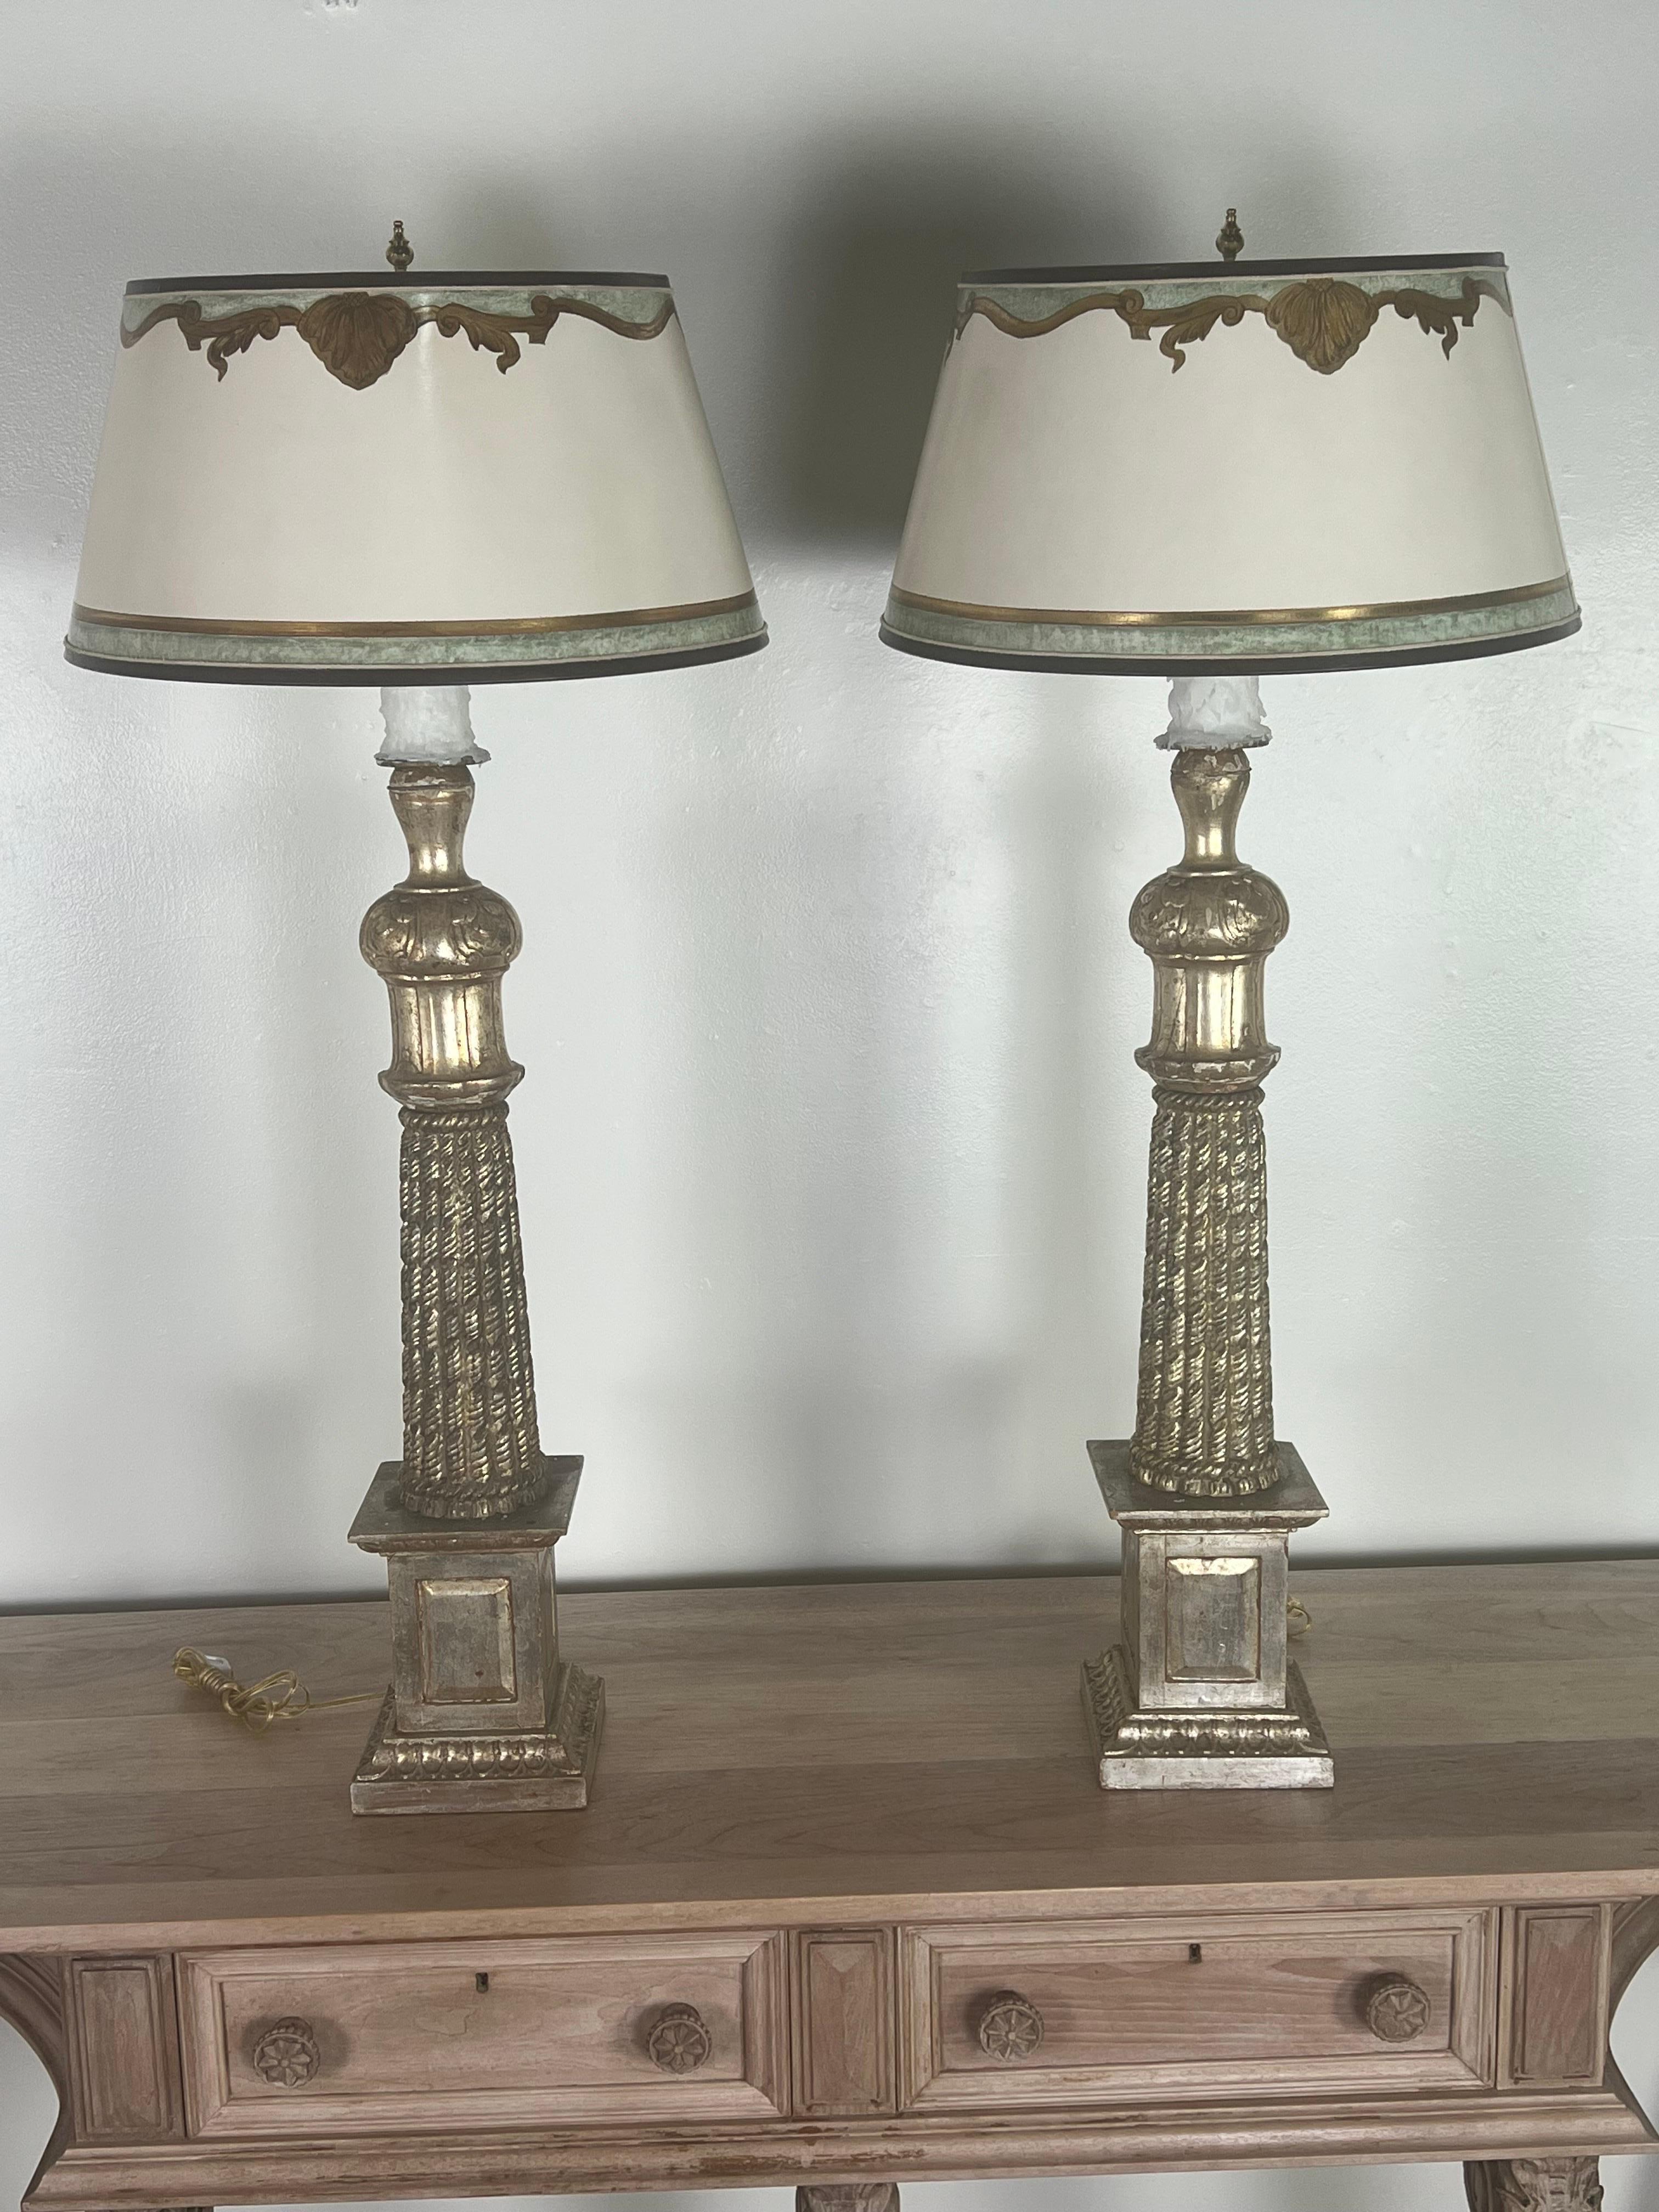 Paar Monumentalgröße schön geschnitzte italienische versilberte Lampen im neoklassischen Stil.  Die Lampen haben handgemalte Pergamentschirme. Die Lampen sind neu verkabelt und mit Tropfwachskerzen versehen.  Sie sind sofort einsatzbereit.